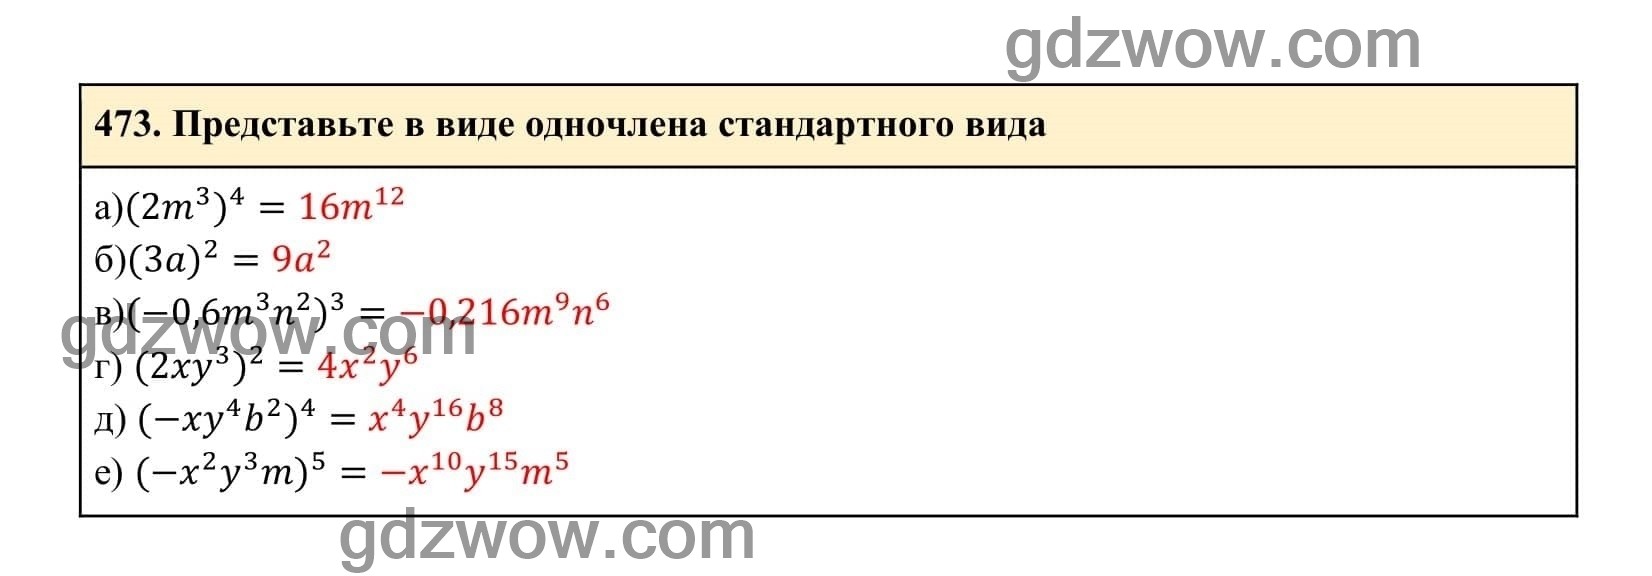 Упражнение 473 - ГДЗ по Алгебре 7 класс Учебник Макарычев (решебник) - GDZwow